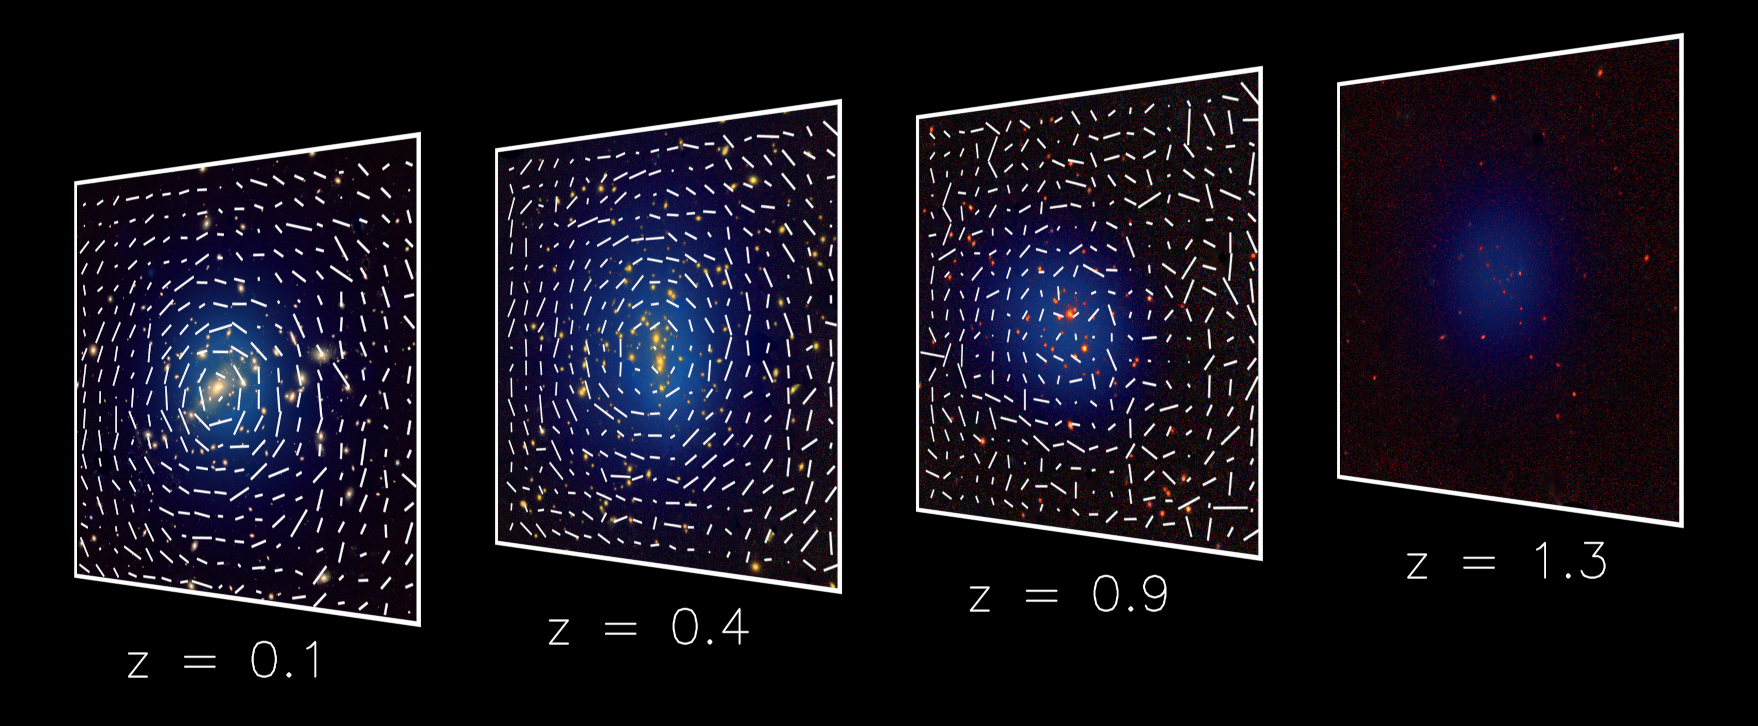 Vier Aufnahmen von Galaxien in Richtung von vier Galaxienhaufen in unterschiedlichen Entfernungen. Zusätzlich dargestellt die gemessene mittlere Verzerrung der Bilder von Hintergrundgalaxien durch den schwachen Gravitationslinseneffekt